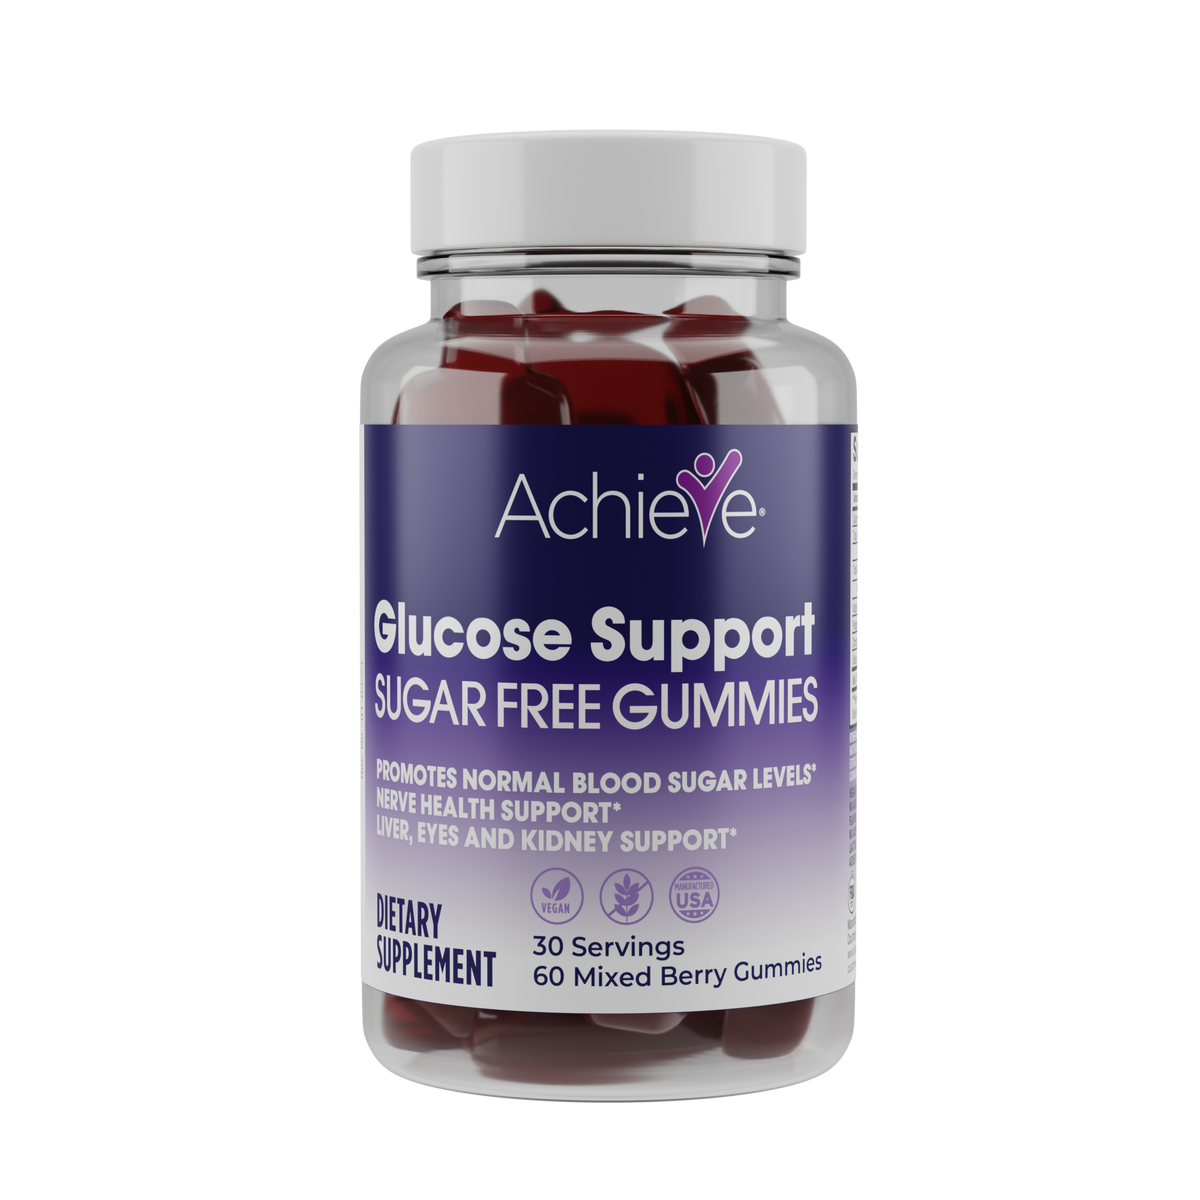 Achieve Glucose Support Sugar Free Gummies